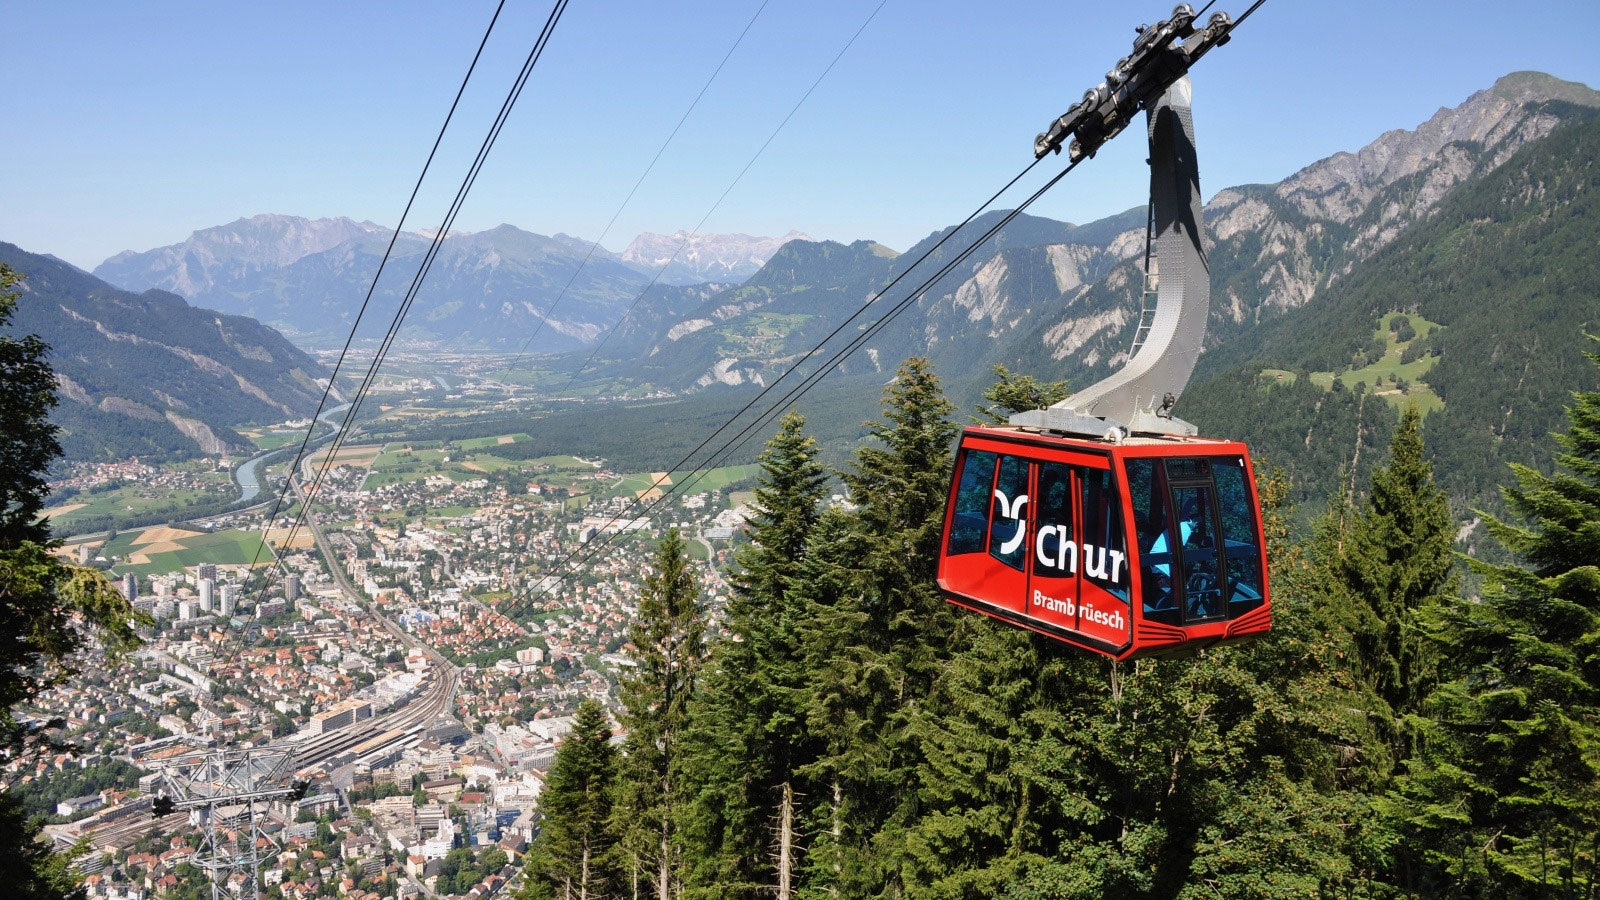 Sonrisa-x-NaturellyMichaela-x-Chur-Brambruesch2 Tour de Suisse: Chur - Welcome to my hometown!